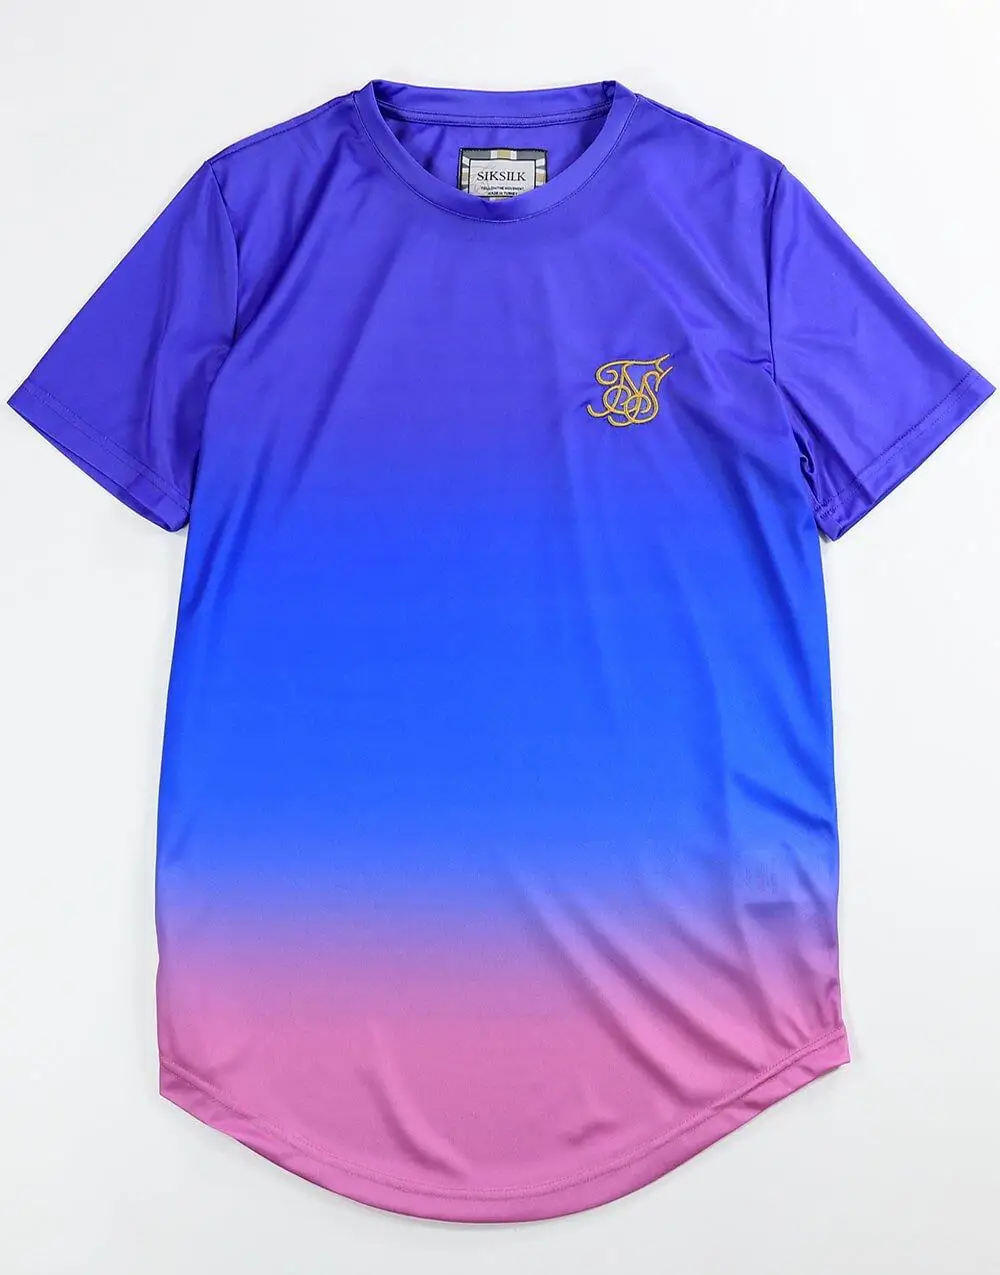 Anticuado Último Culpable SikSilk Camiseta para hombre de color morado, azul y rosa|Camisetas| -  AliExpress